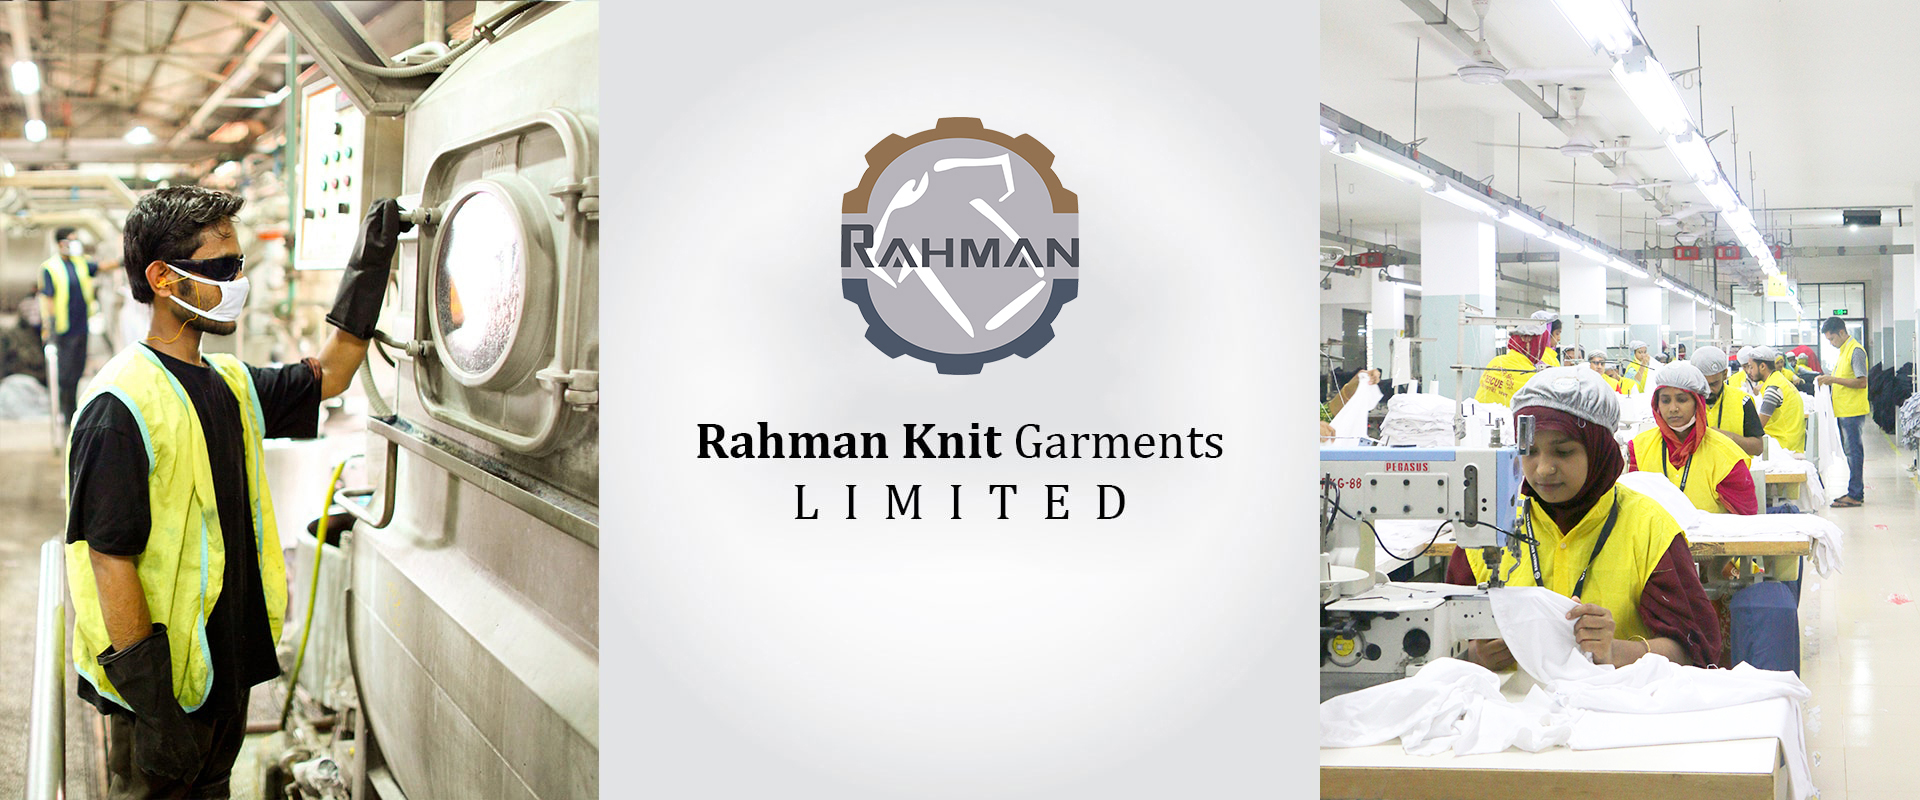 Rahman-Knit-Garments-Ltd